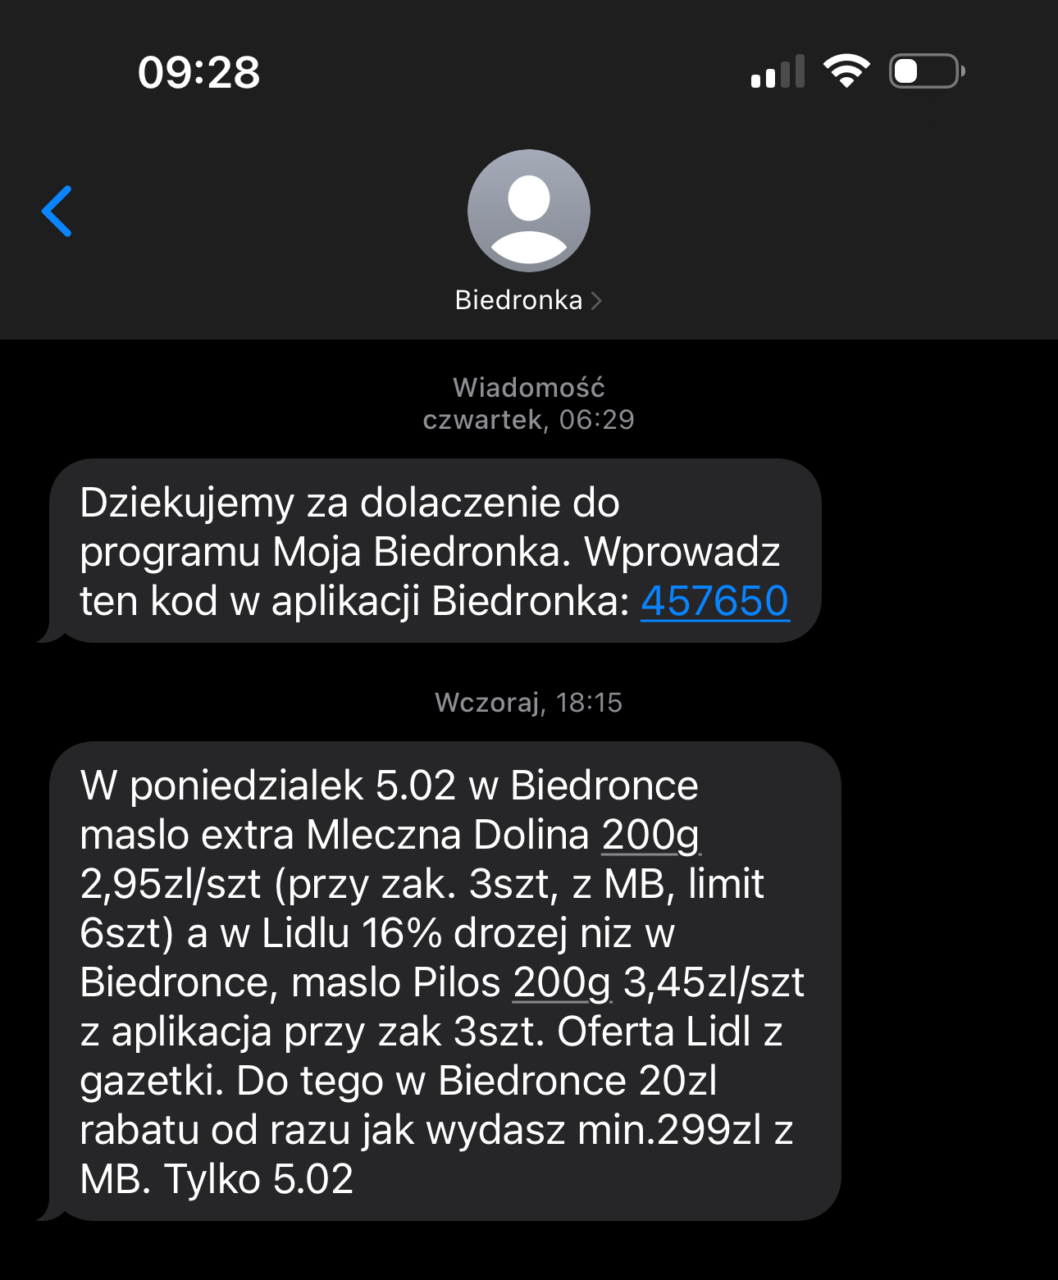 Zrzut ekranu rozmowy SMS z nadawcą "Biedronka" pokazujący dwie wiadomości promocyjne i unikalny kod do programu lojalnościowego.